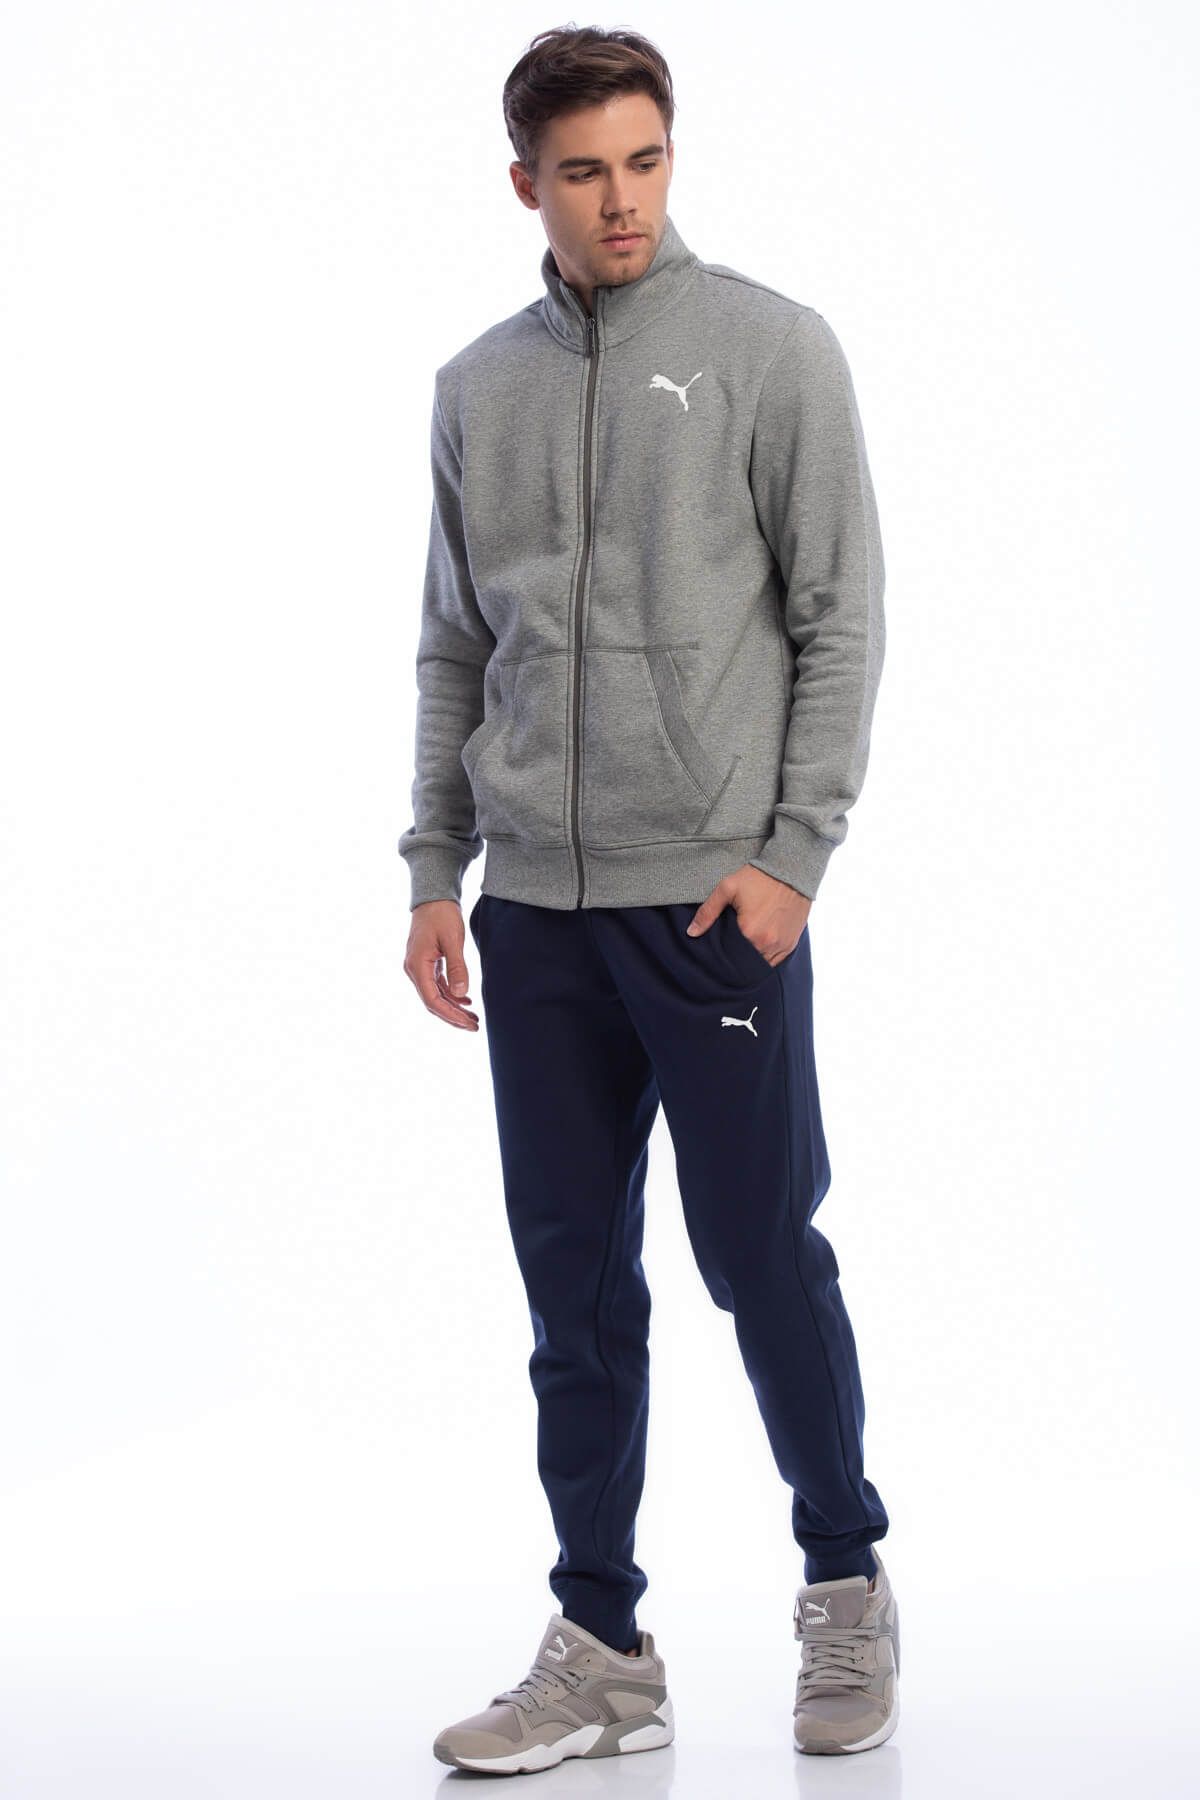 Puma Erkek Eşofman Takımı - Style Good Sweat Suit Cl - 85155503